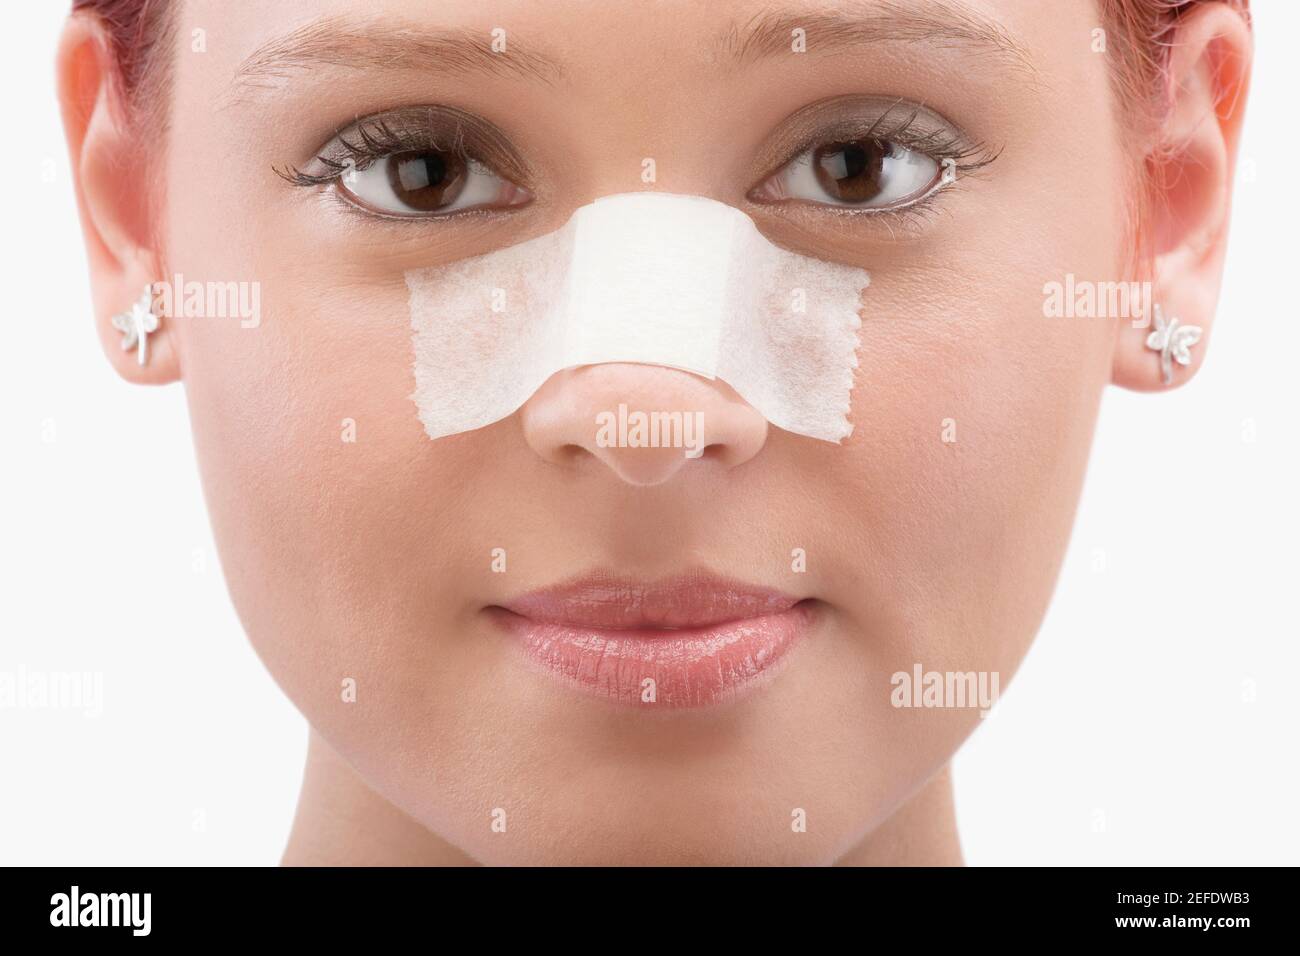 Gros plan d'une patiente avec un pansement adhésif son nez Photo Stock -  Alamy